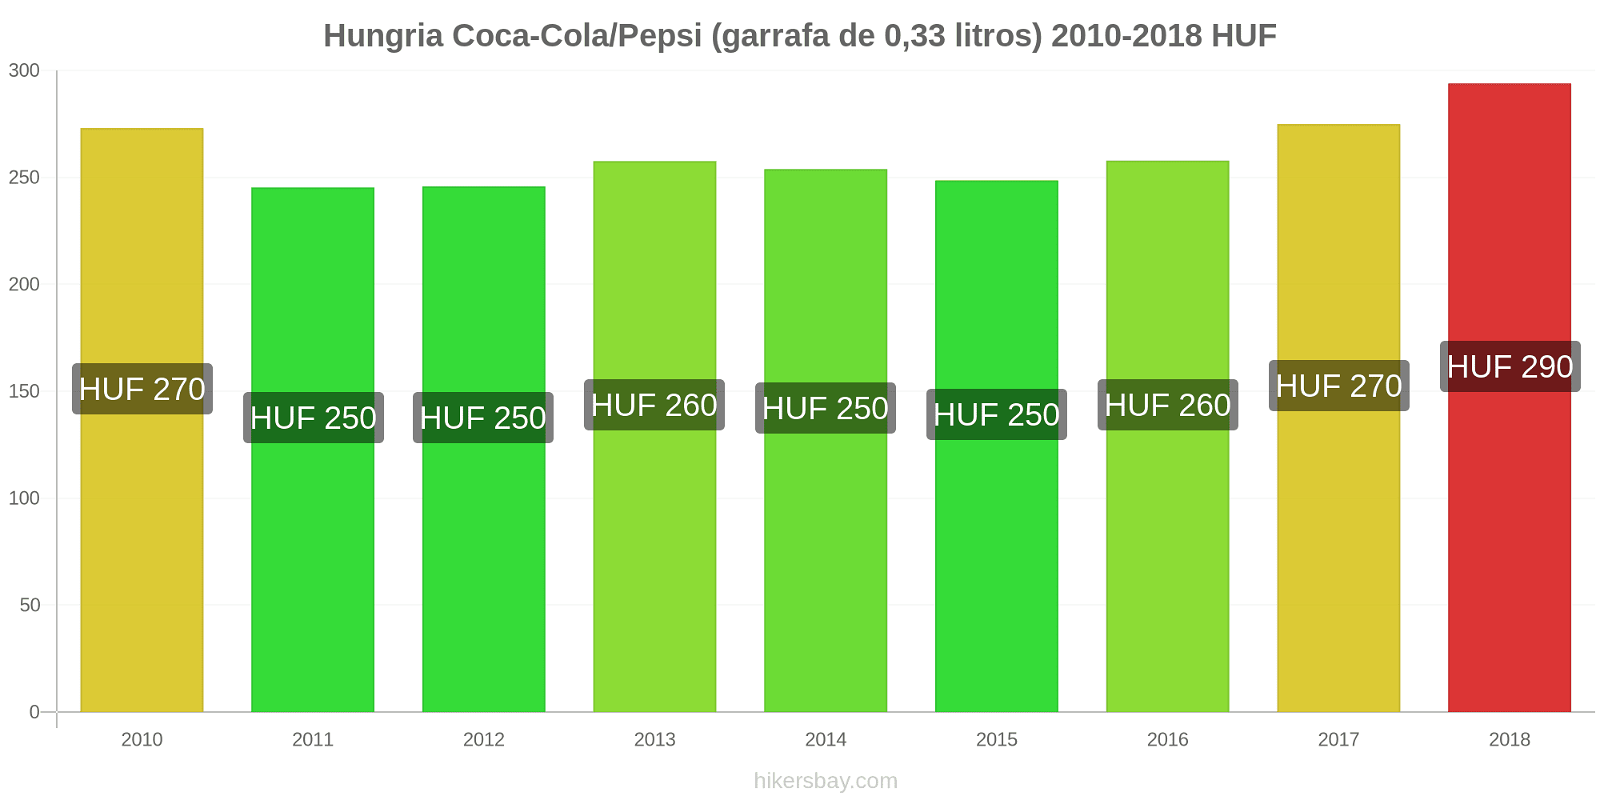 Hungria mudanças de preços Coca-Cola/Pepsi (garrafa de 0.33 litros) hikersbay.com